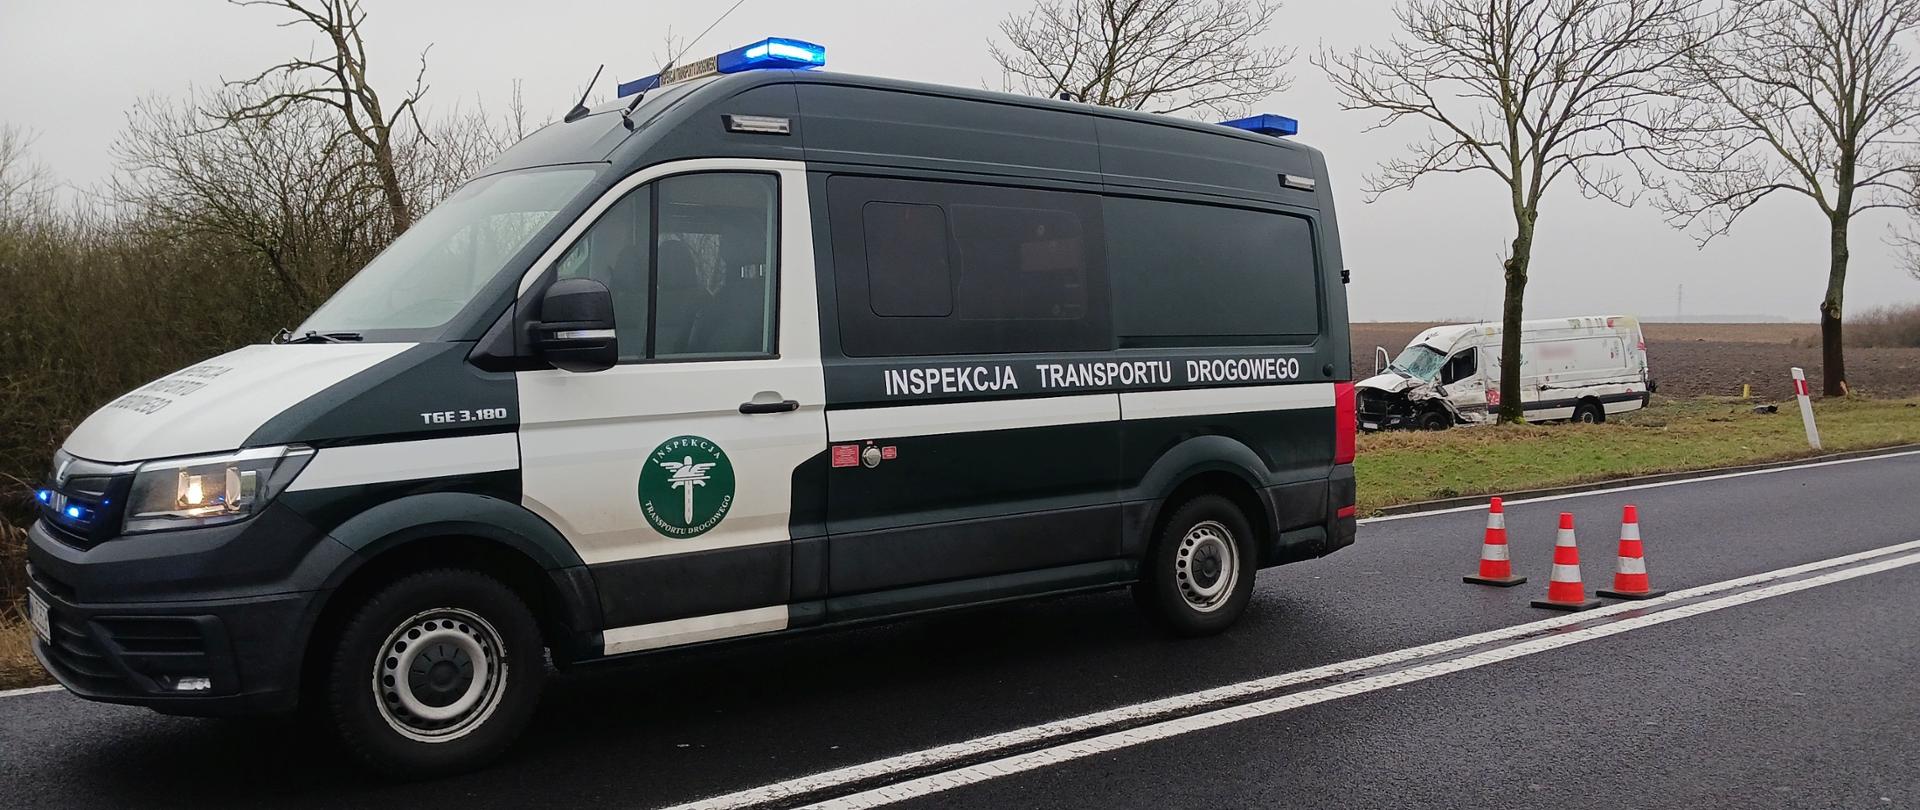 Radiowóz Inspekcji Transportu Drogowego i bus zahaczony przez naczepę.